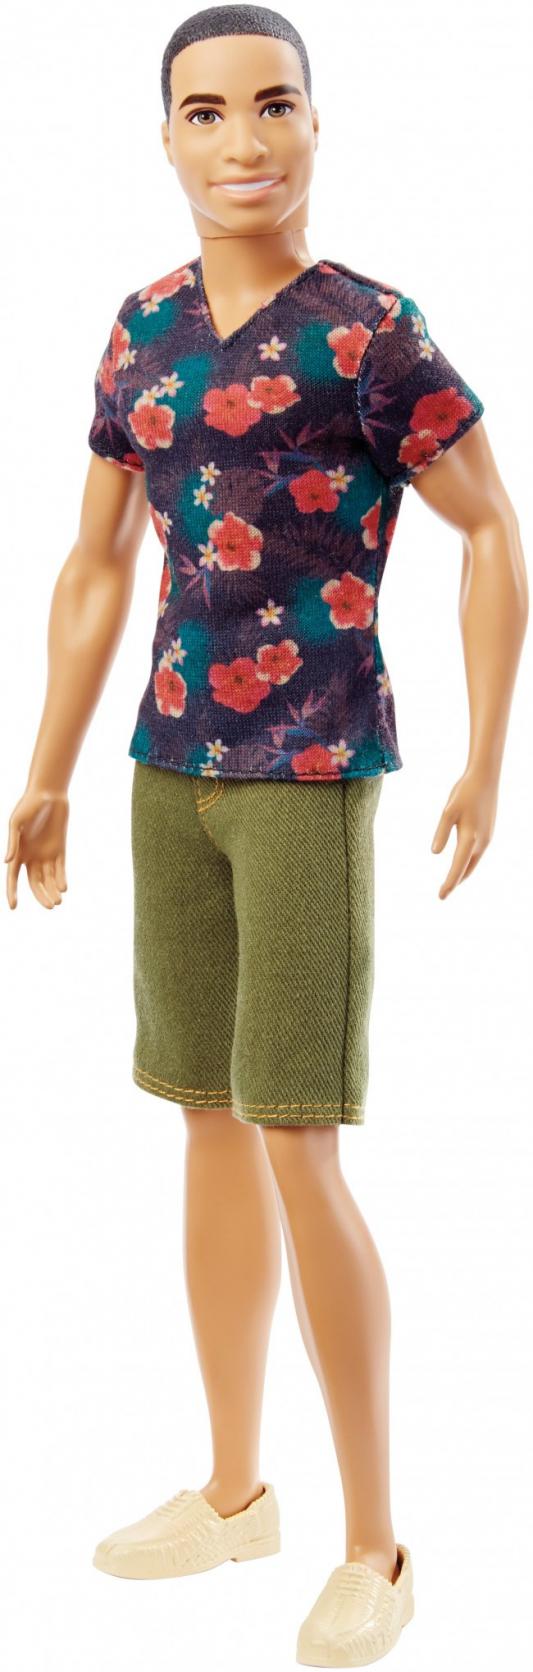 Кукла Mattel Barbie Игра с модой Кен в зеленых шортах и футболке с цветами 30 см DGY66